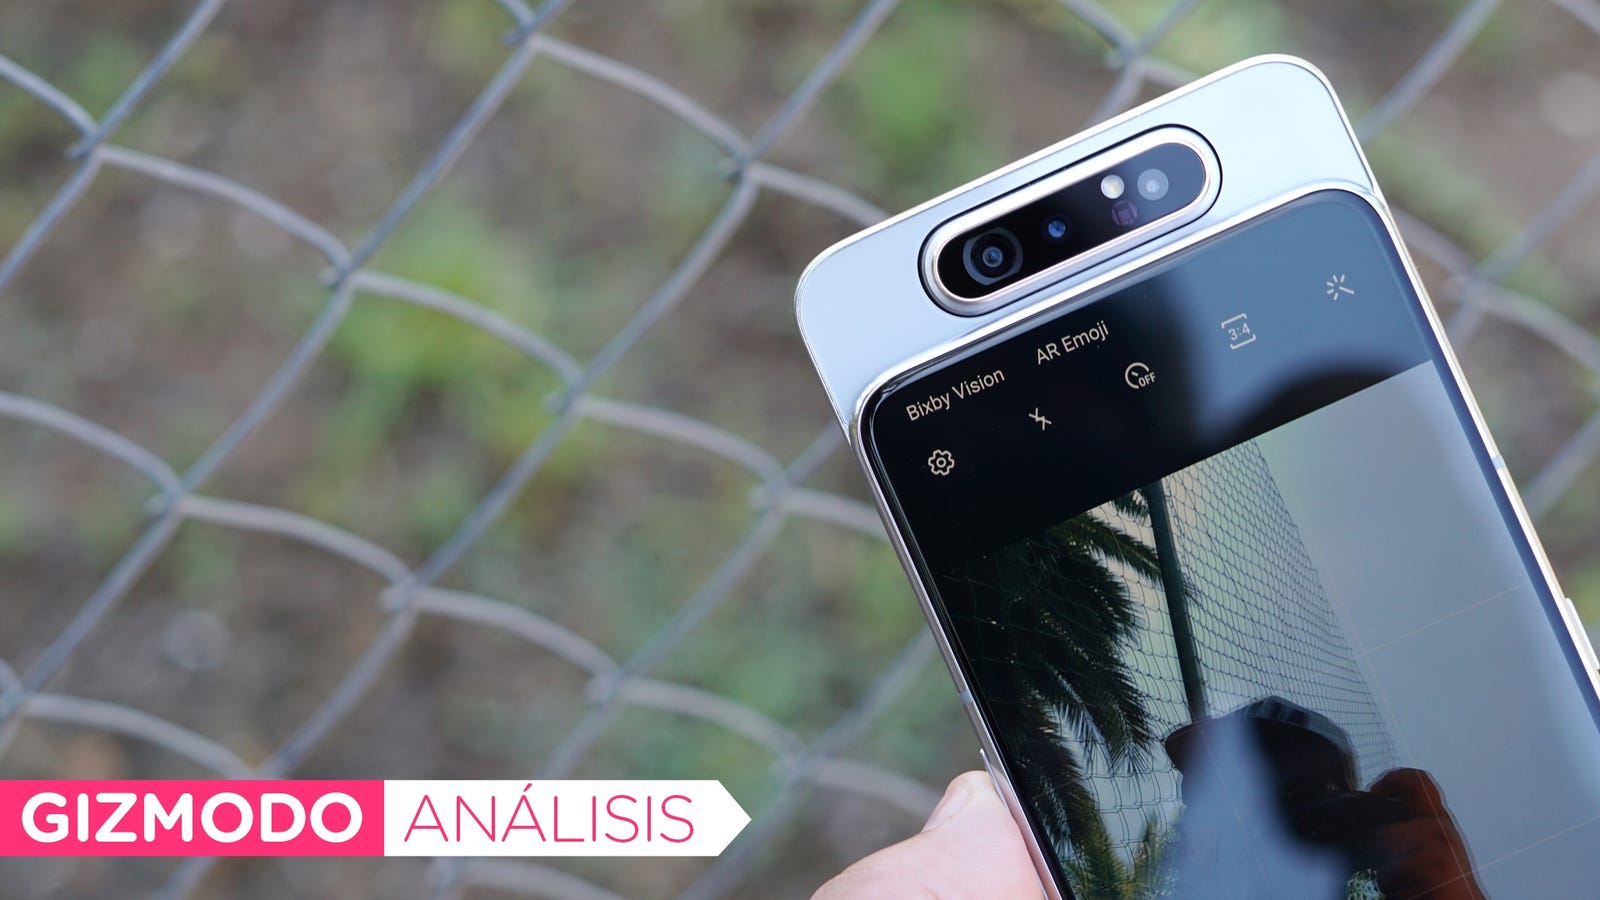 Bahkan kamera berputar pun tidak dapat membenarkan harga Galaxy A80 1